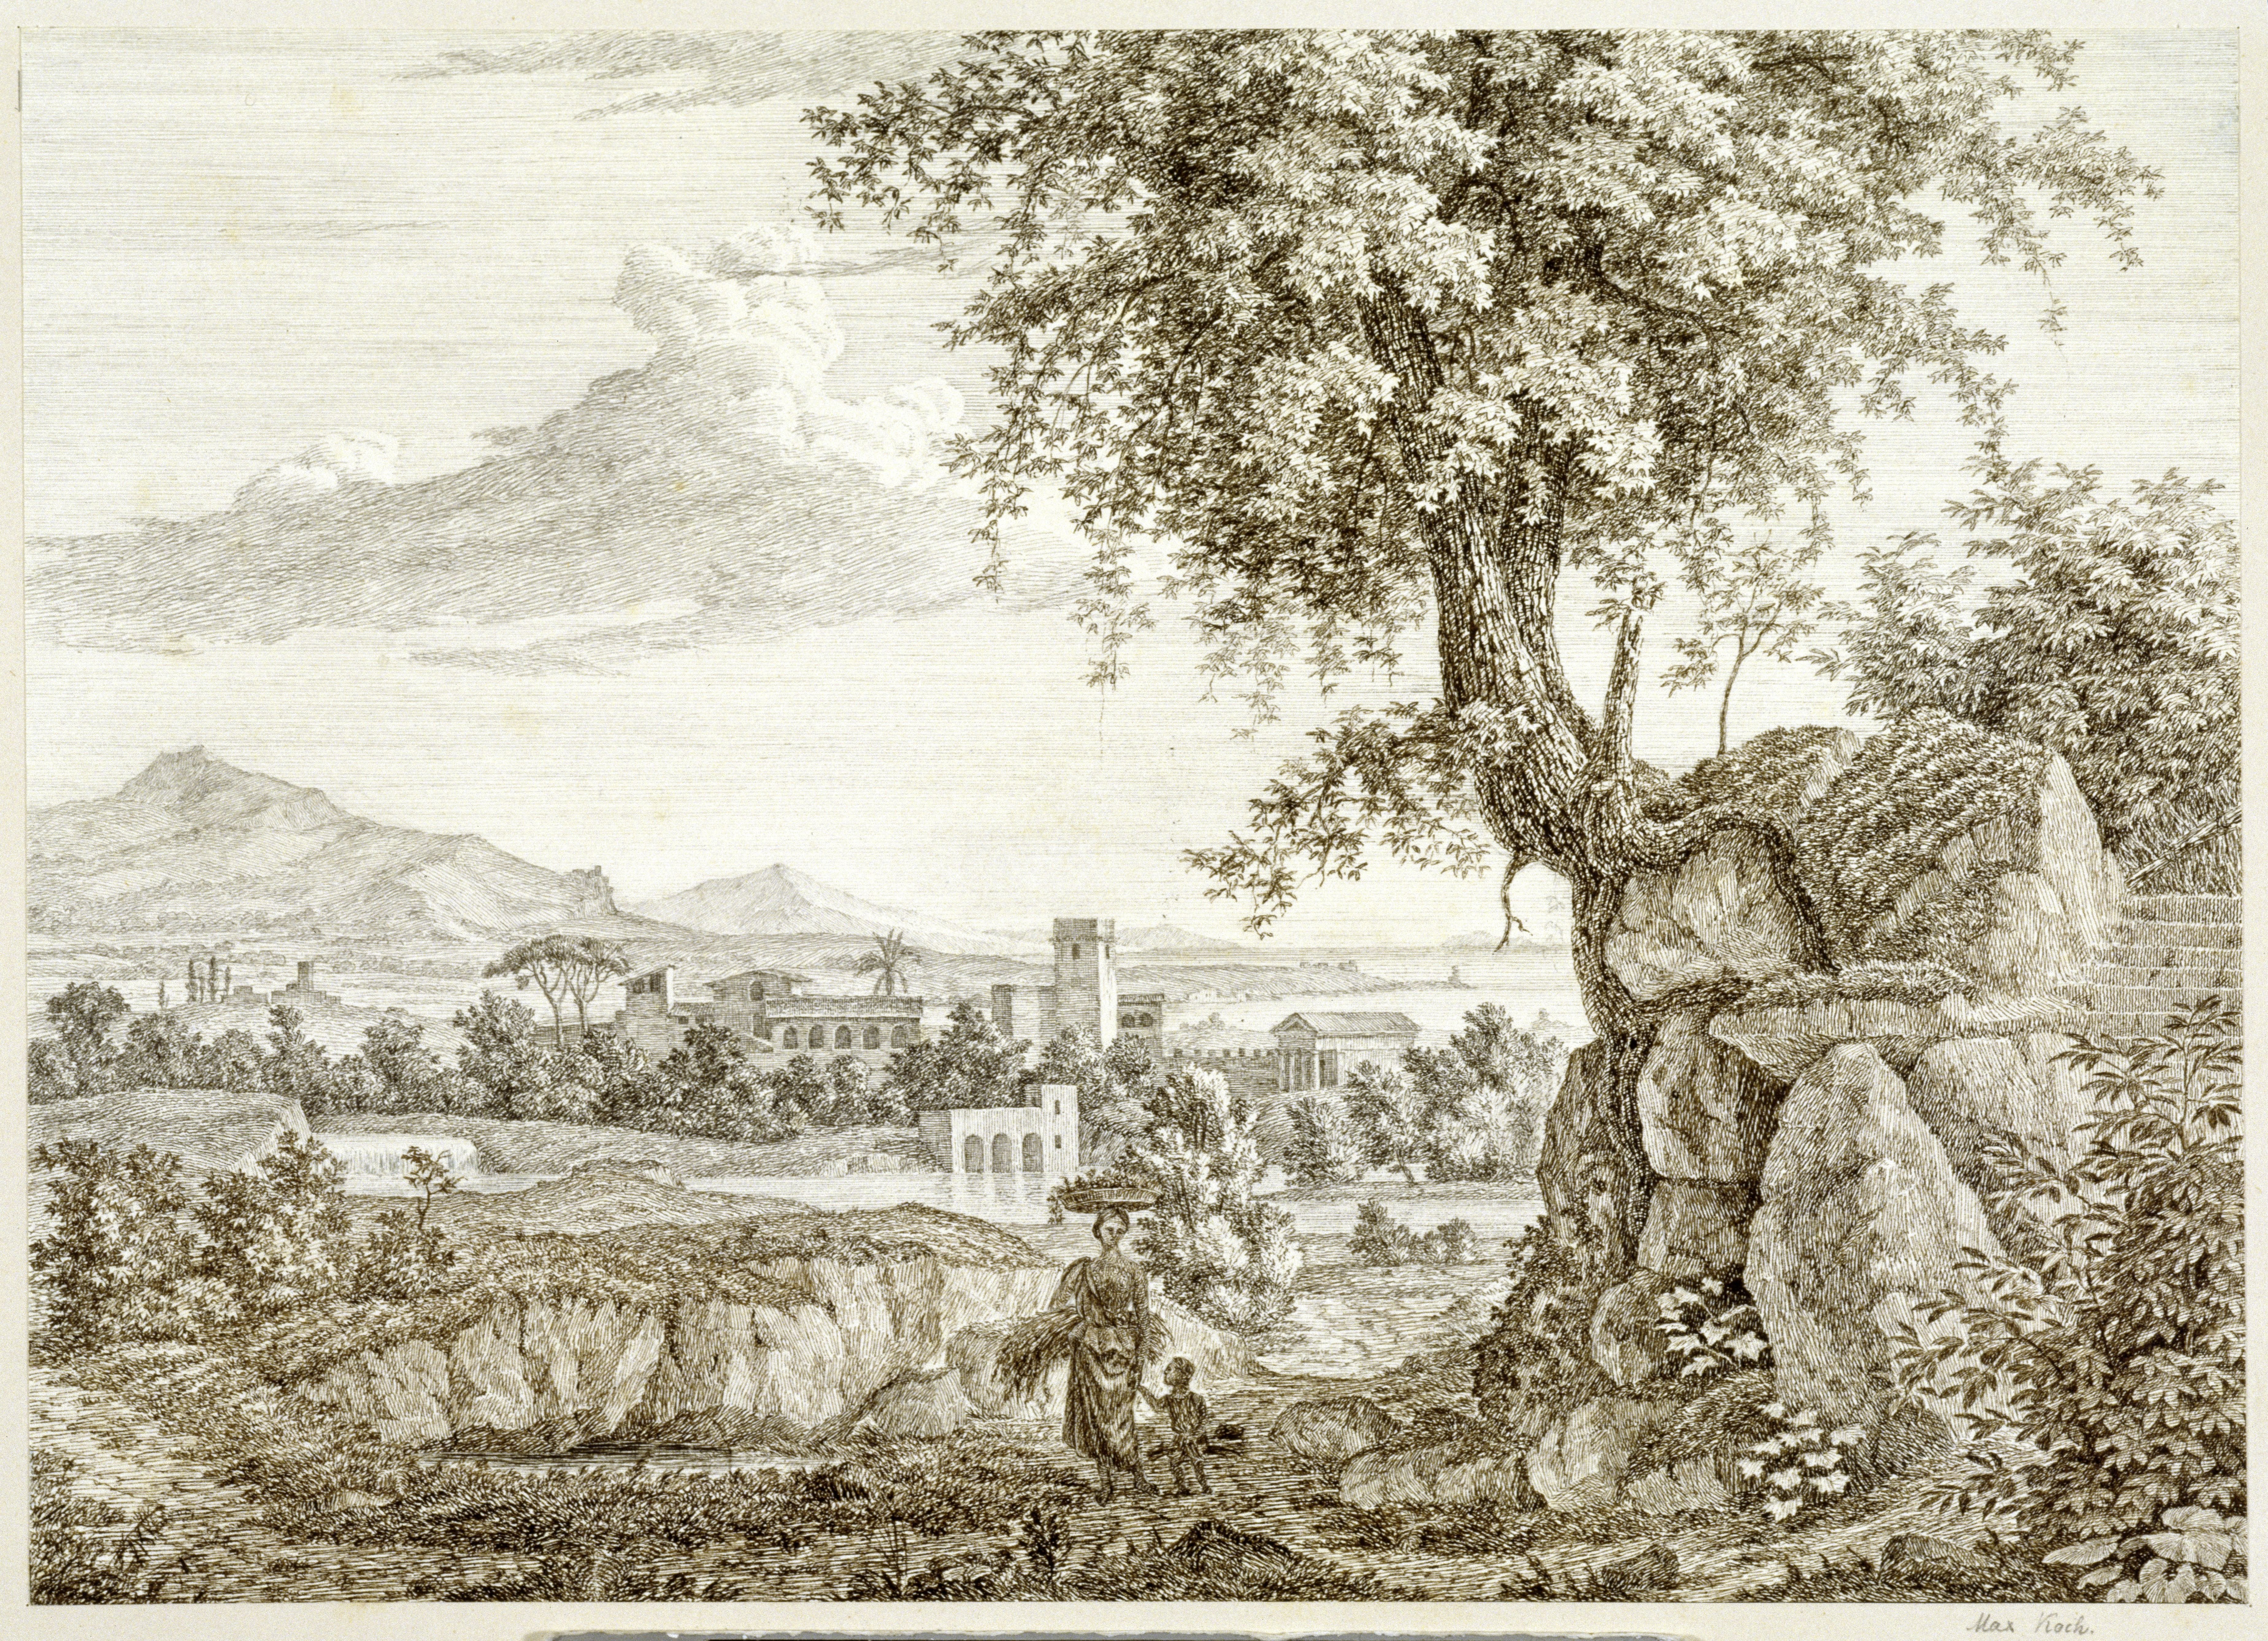 Roch, Maximilian: Ideale Landschaft, 1823, SPSG, GK II (5) 1864. (Stiftung Preußische Schlösser und Gärten Berlin-Brandenburg CC BY-NC-SA)